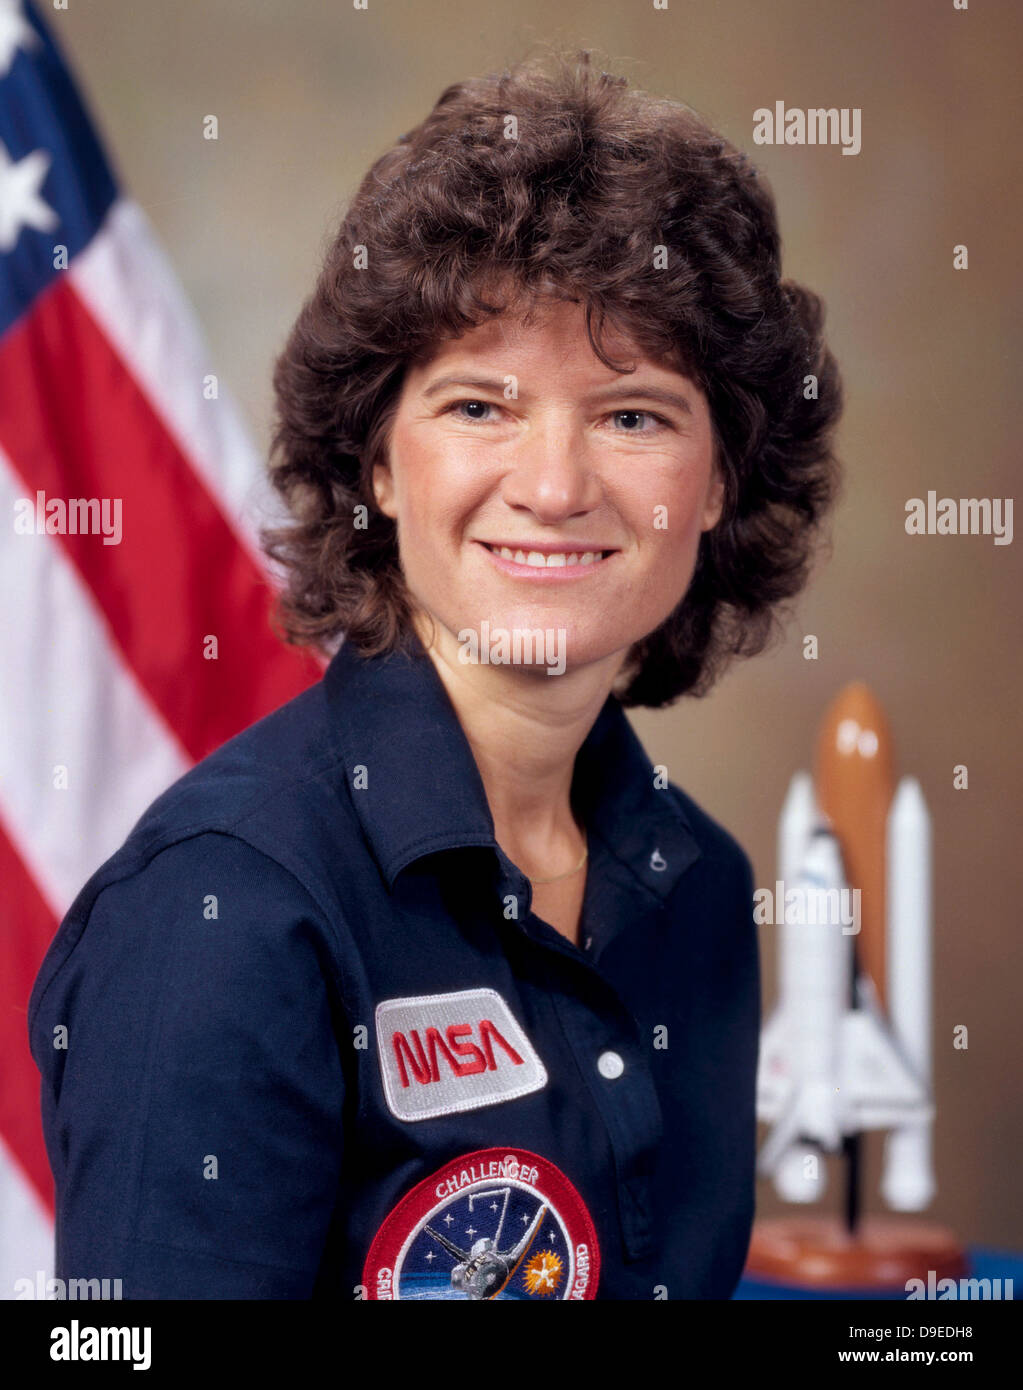 L'astronaute de la NASA Sally Ride dans son portrait officiel le 10 juillet 1984 à Houston, TX. Sally Ride devient la première femme américaine à voler dans l'espace le 18 juin 1983 à bord de la navette Challenger. Banque D'Images